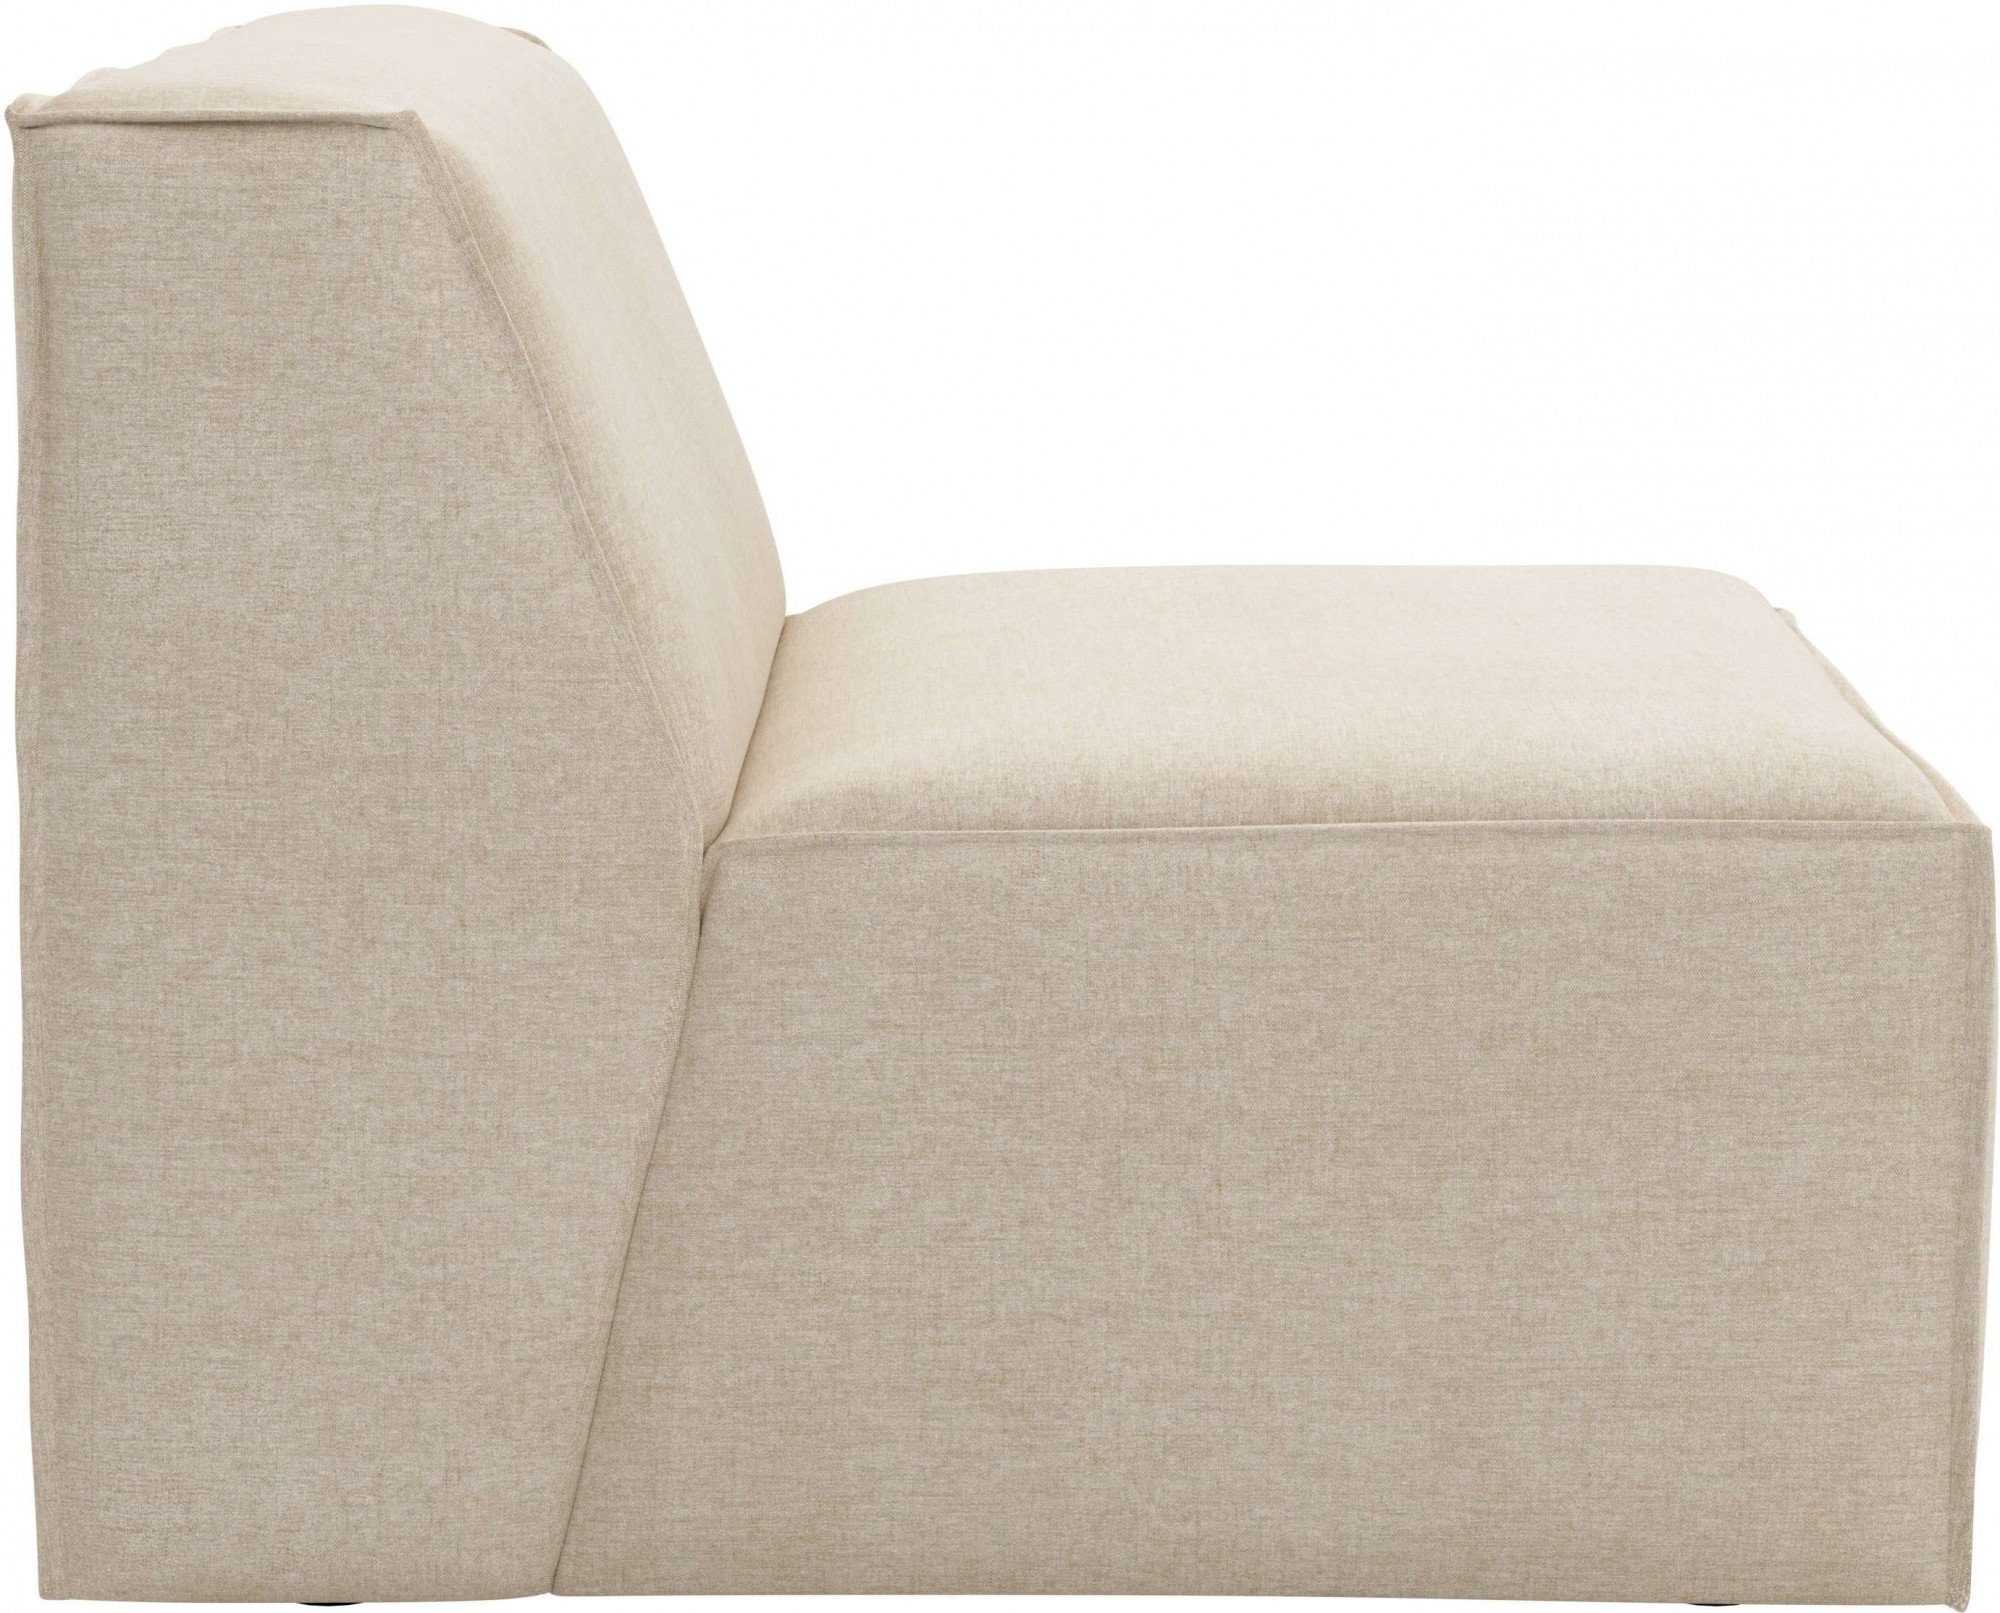 RAUM.ID Sofa-Mittelelement Norvid, Modulen große modular, Taschenfederkern, Auswahl an natural mit